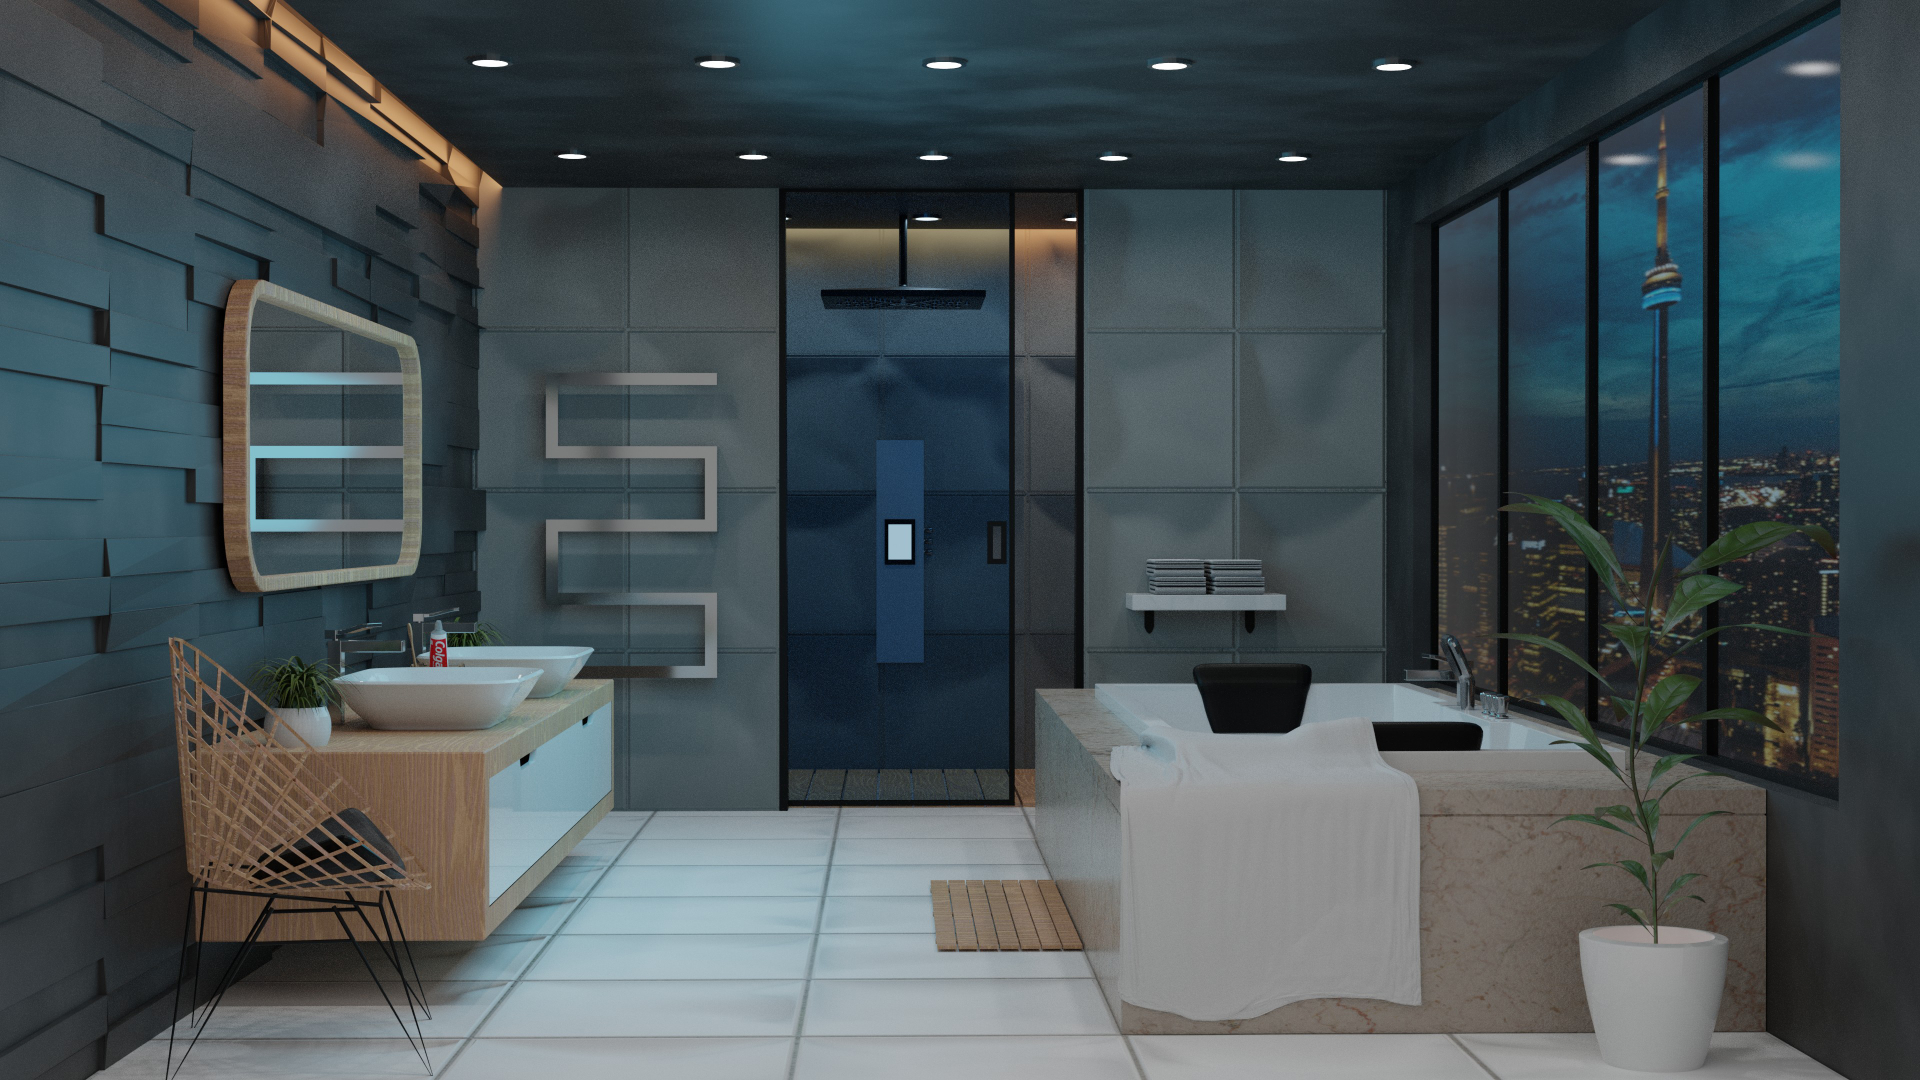 Rendu 3D d'une salle de bain de luxe en haut d'un immeuble avec vue sur la ville de nuit